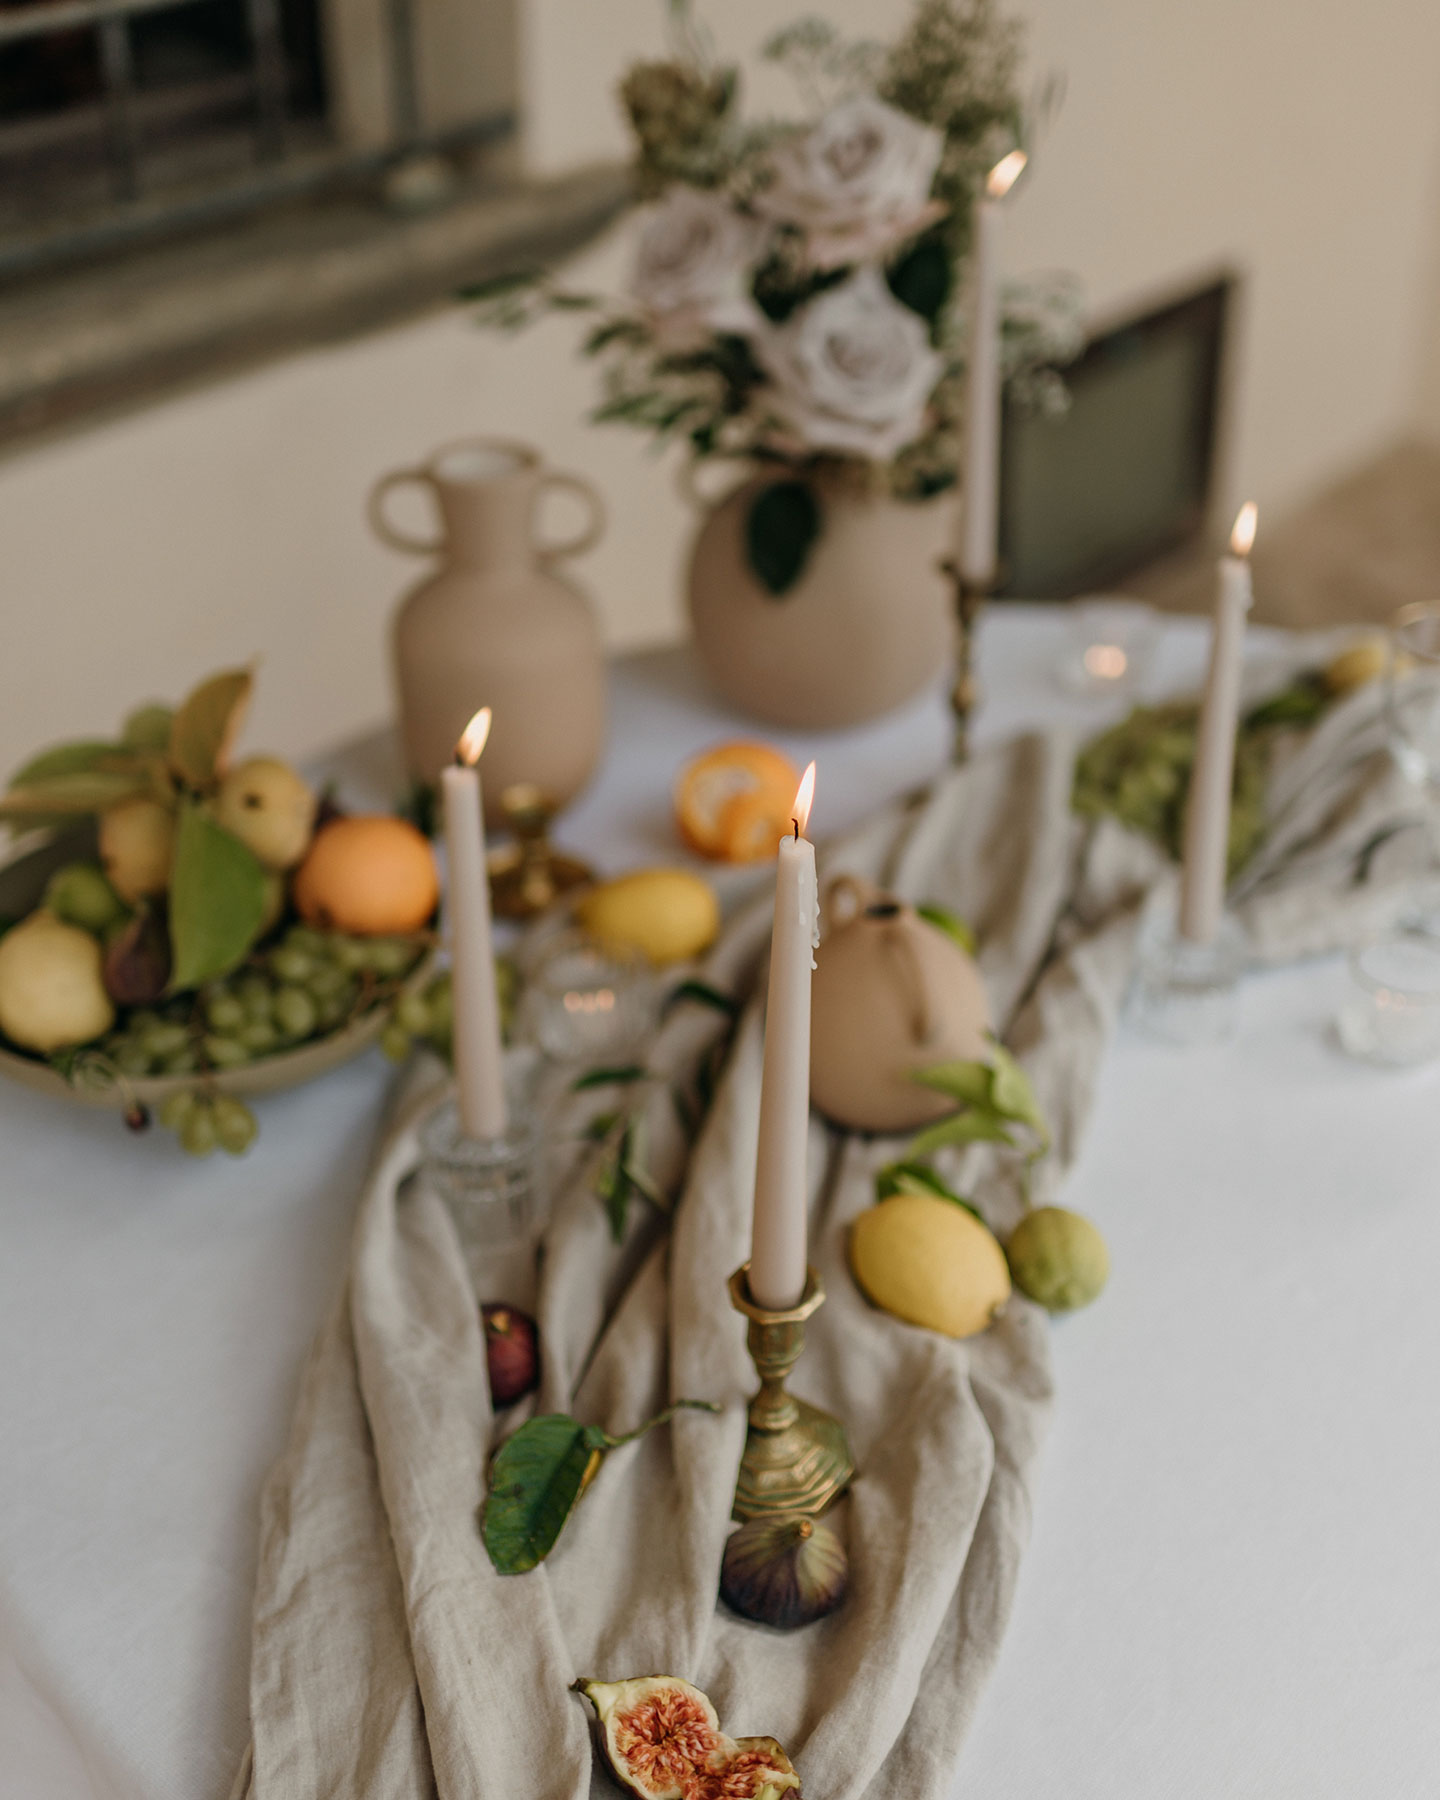  Der gedeckte Hochzeitstisch wurde mit einer weißen Tischdecke versehen. Darauf befindet sich ein Leinenläufer in Beige, auf diesem sind goldene Stabkerzenhalter, Zitrusfrüchte, Feigen und Dekoblätter platziert.